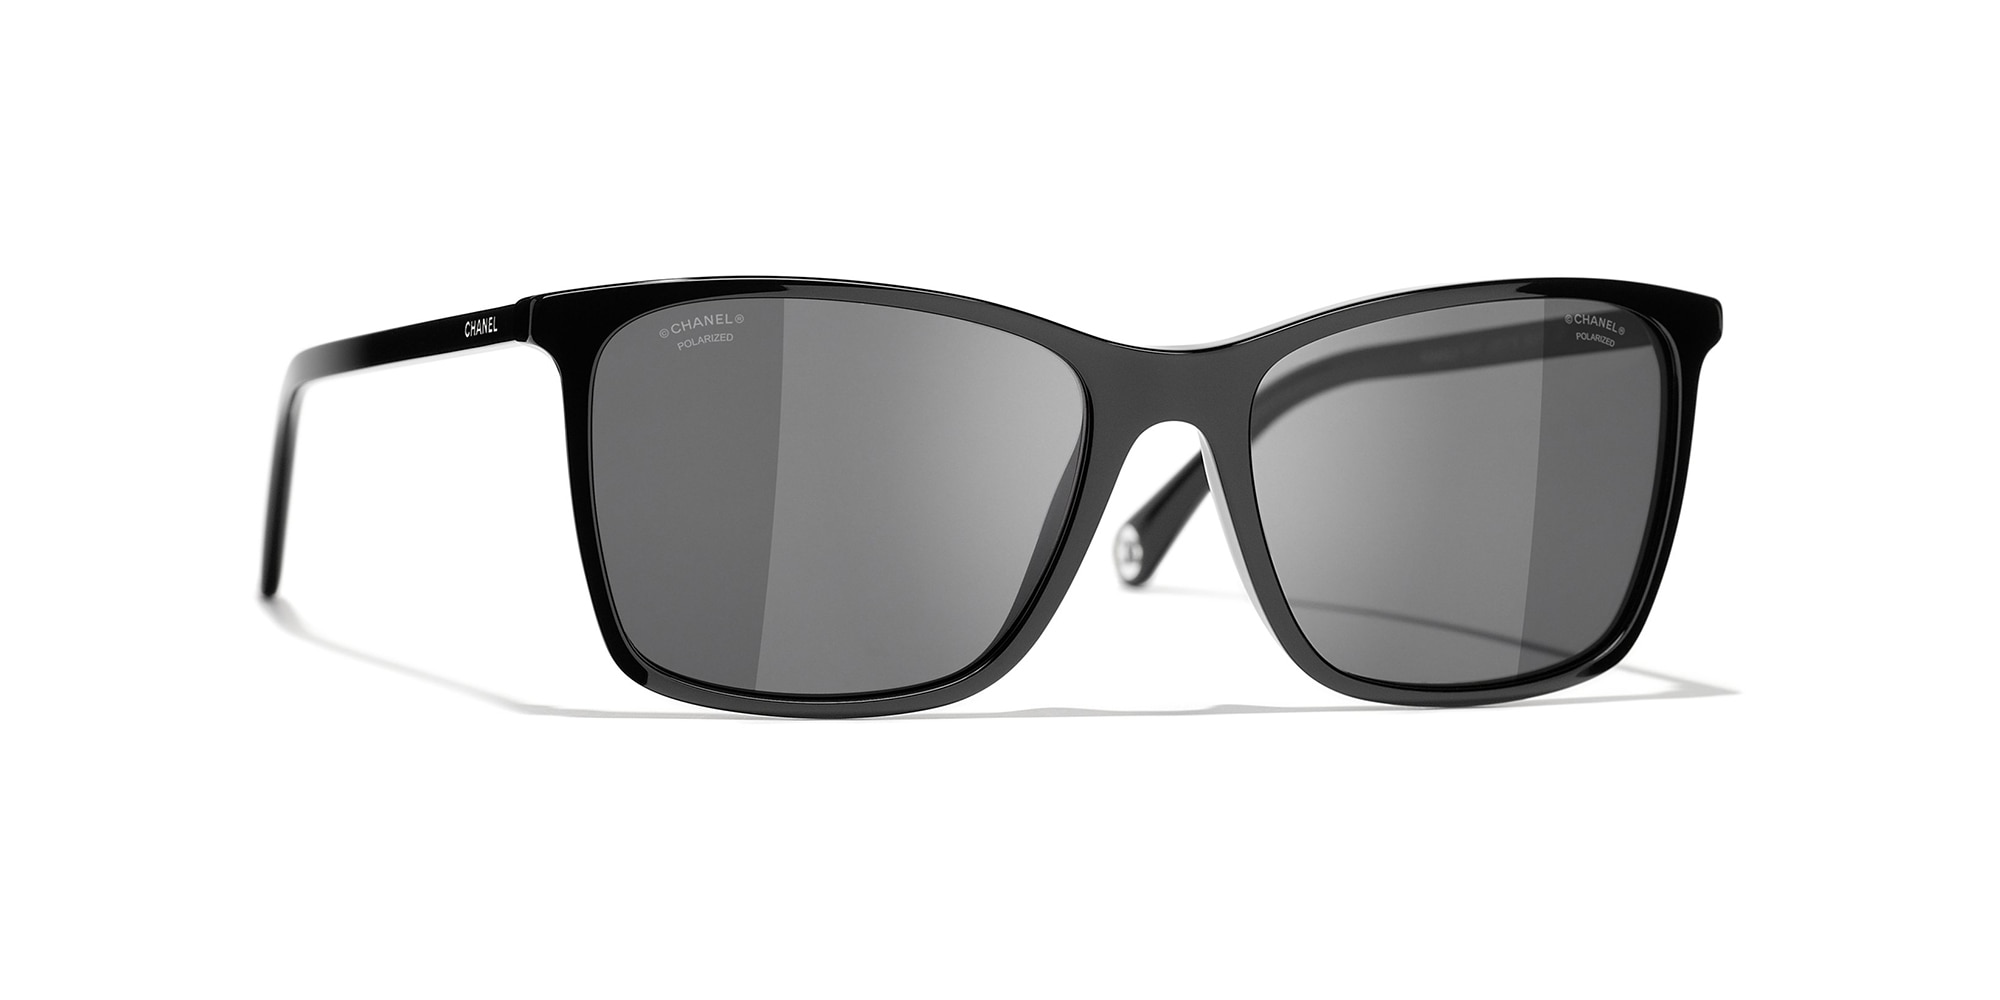 Chanel Acetate Strass Square Polarized Sunglasses Black  Coco Approved  Studio